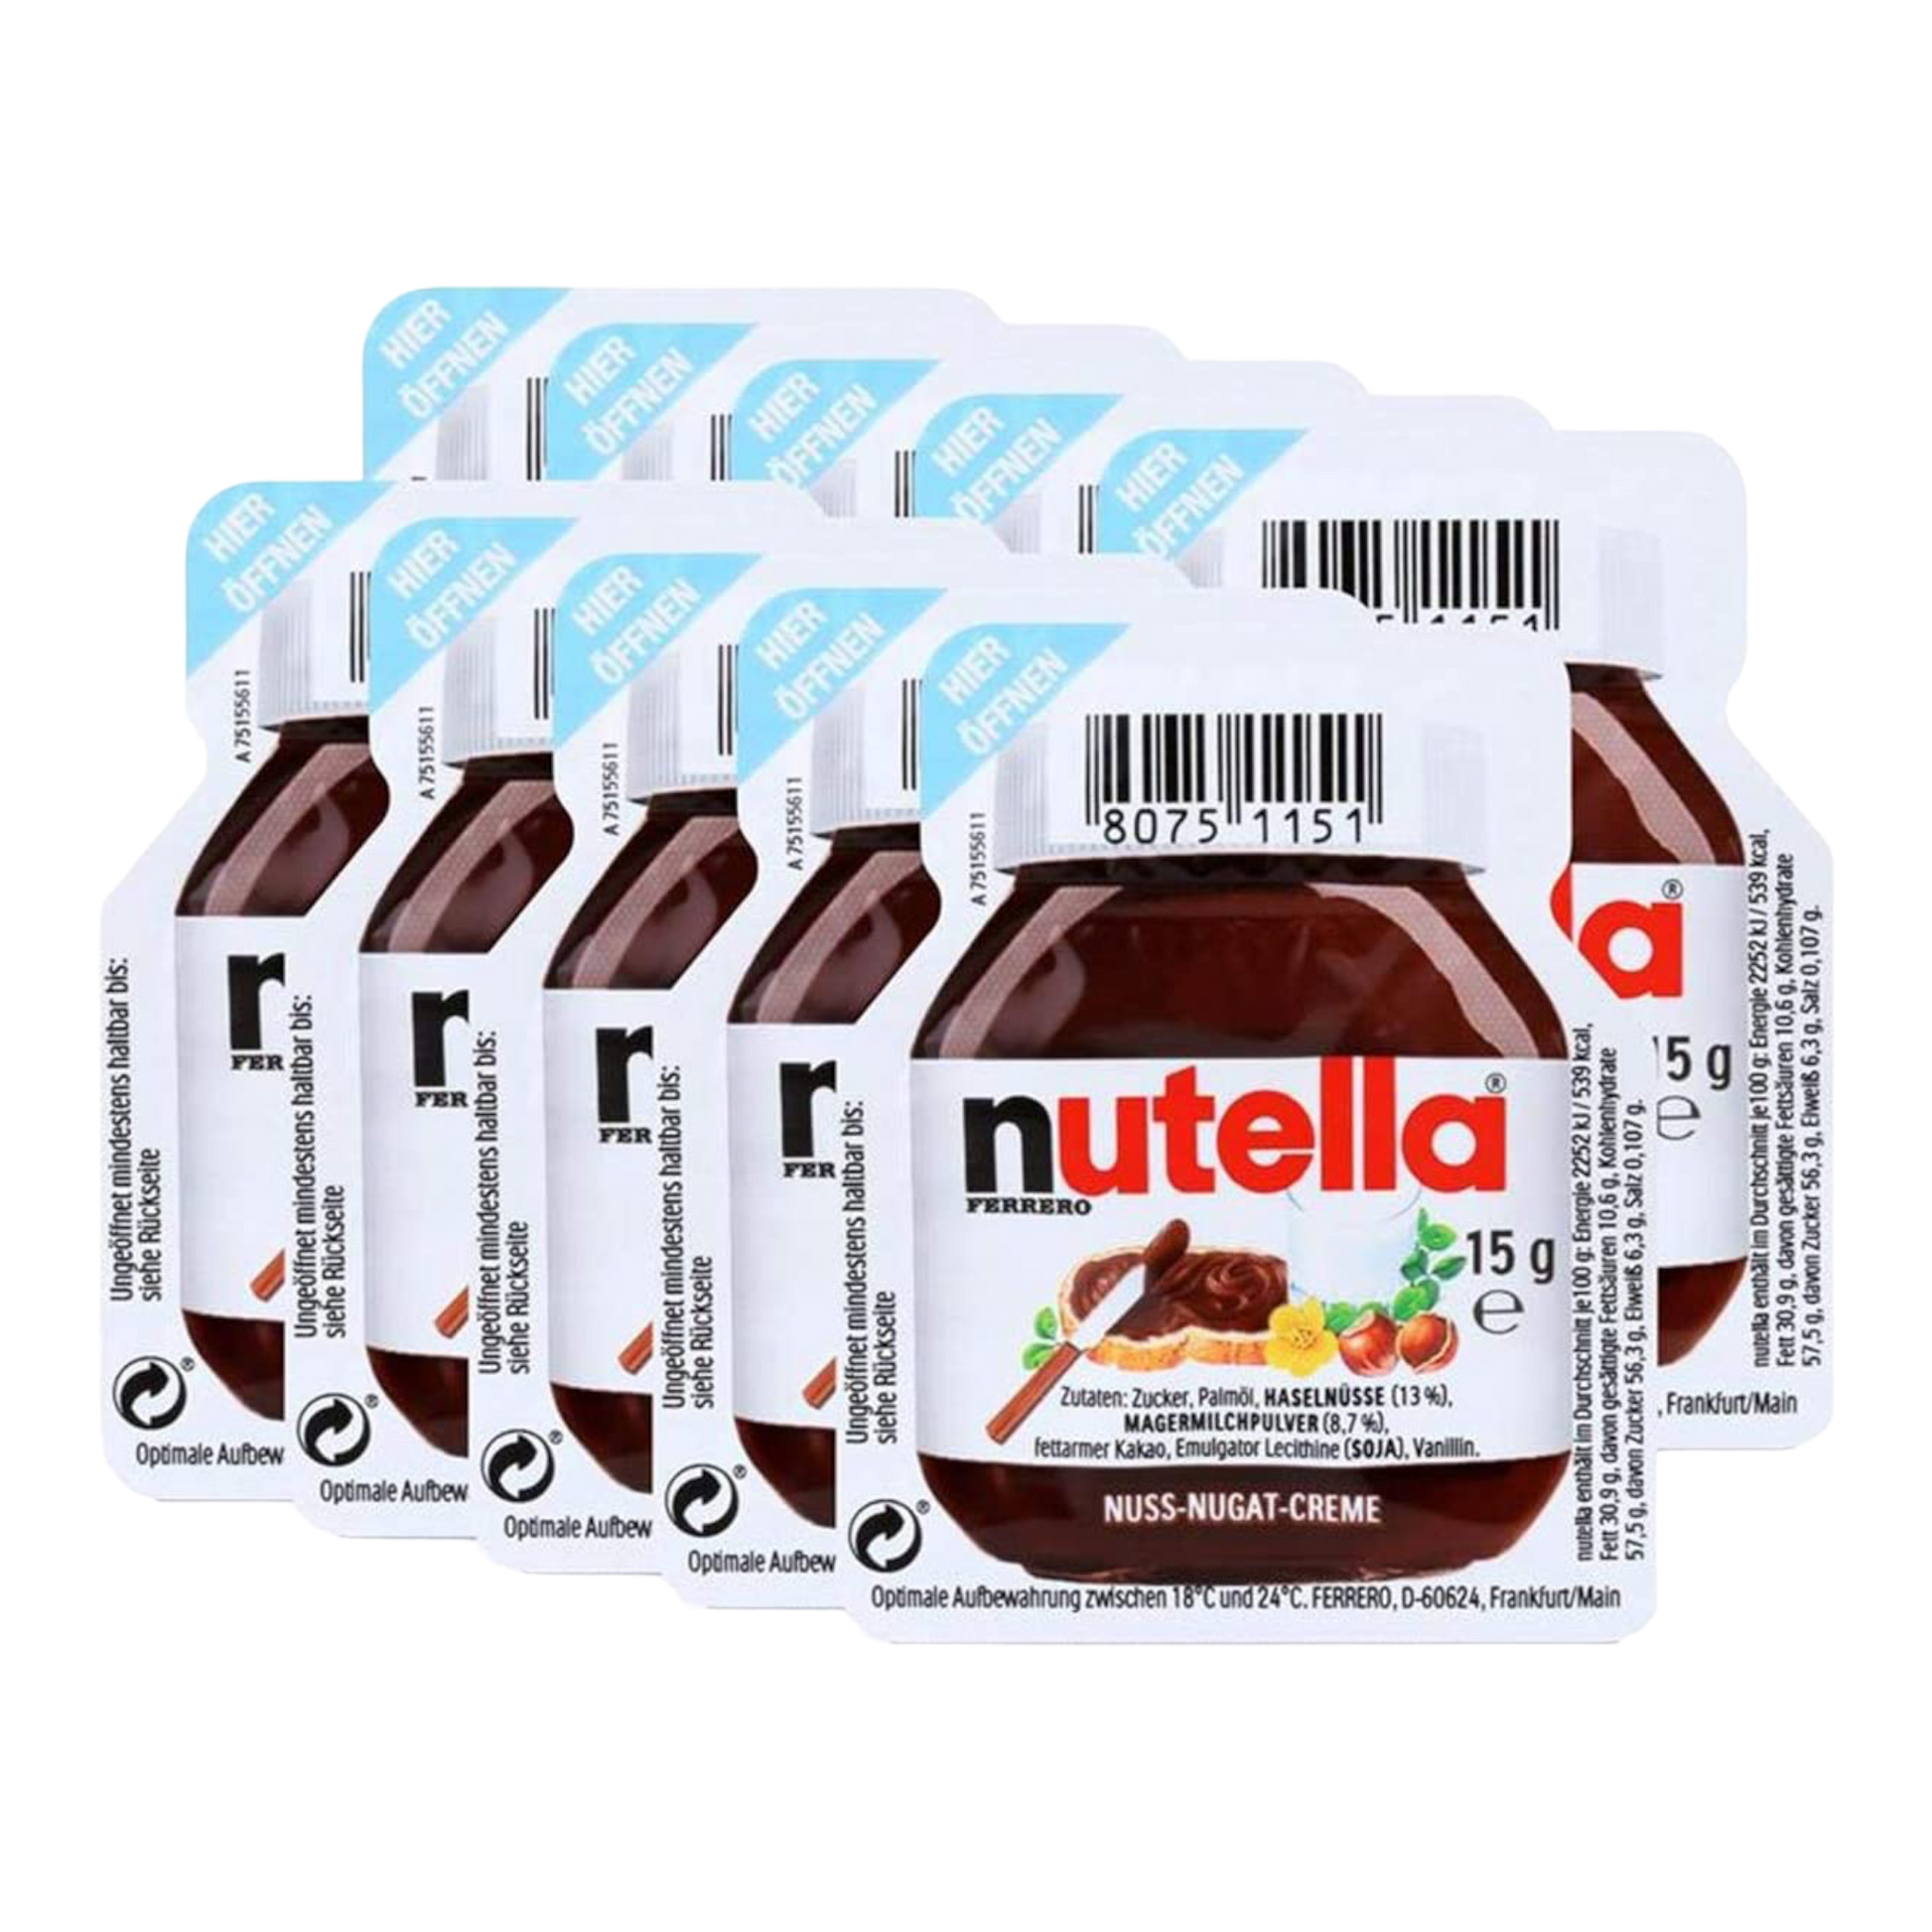 Nutella Hazelnut Spread with Cocoa Mini Cups 10 Count, 10 ct